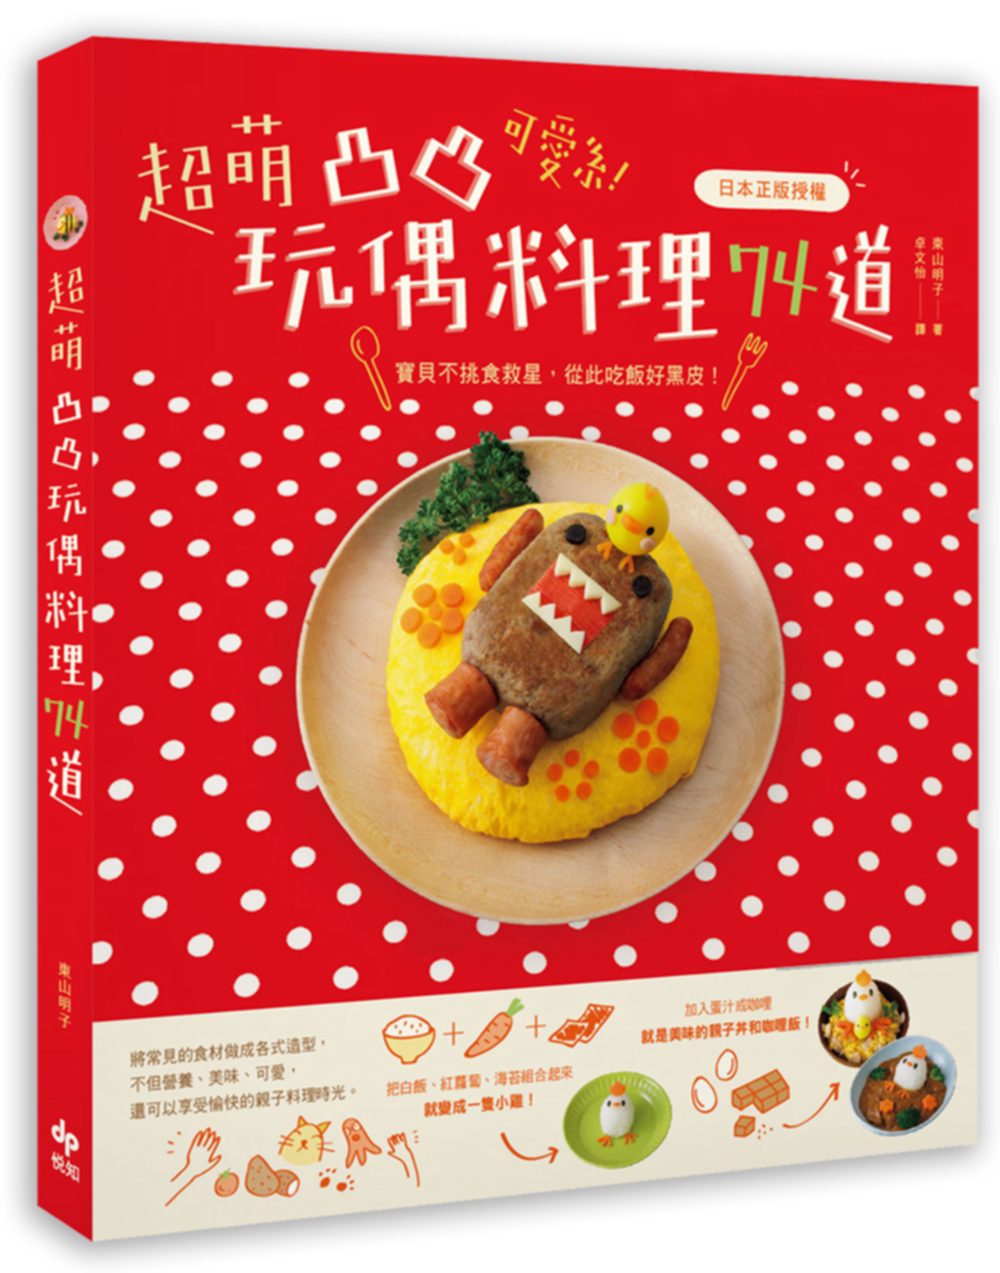 可愛系！超萌凸凸玩偶料理74道〔日本正版授權〕：寶貝不挑食救星，從此吃飯好黑皮！